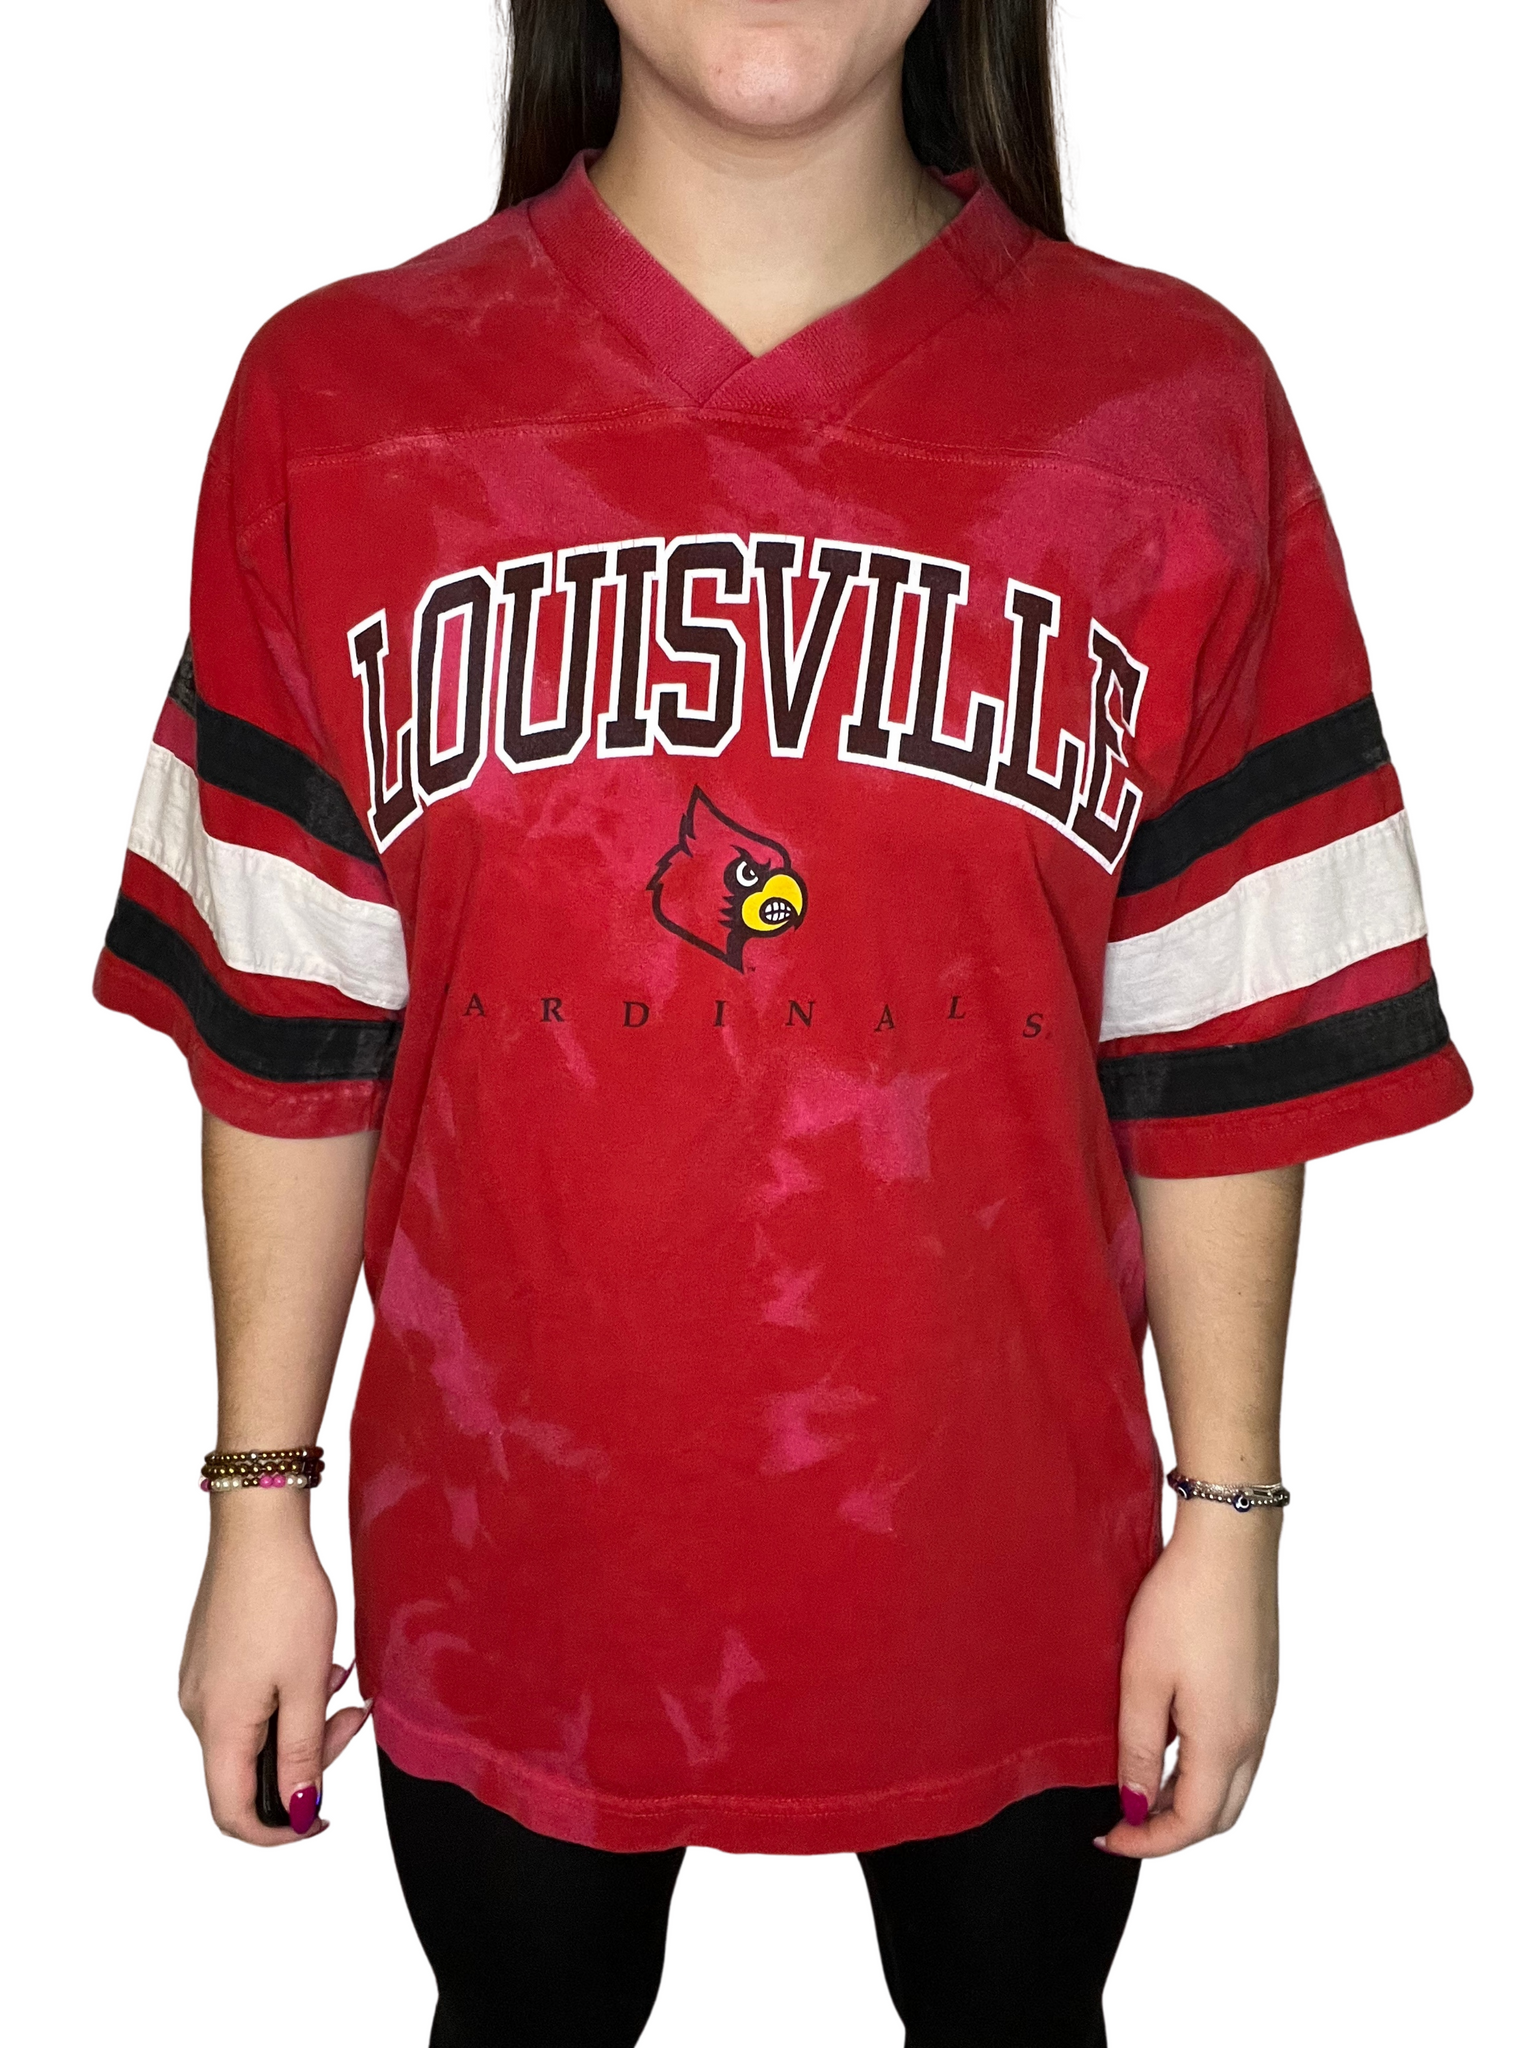 University of Louisville Tie Dye Shirt – Kampus Kustoms